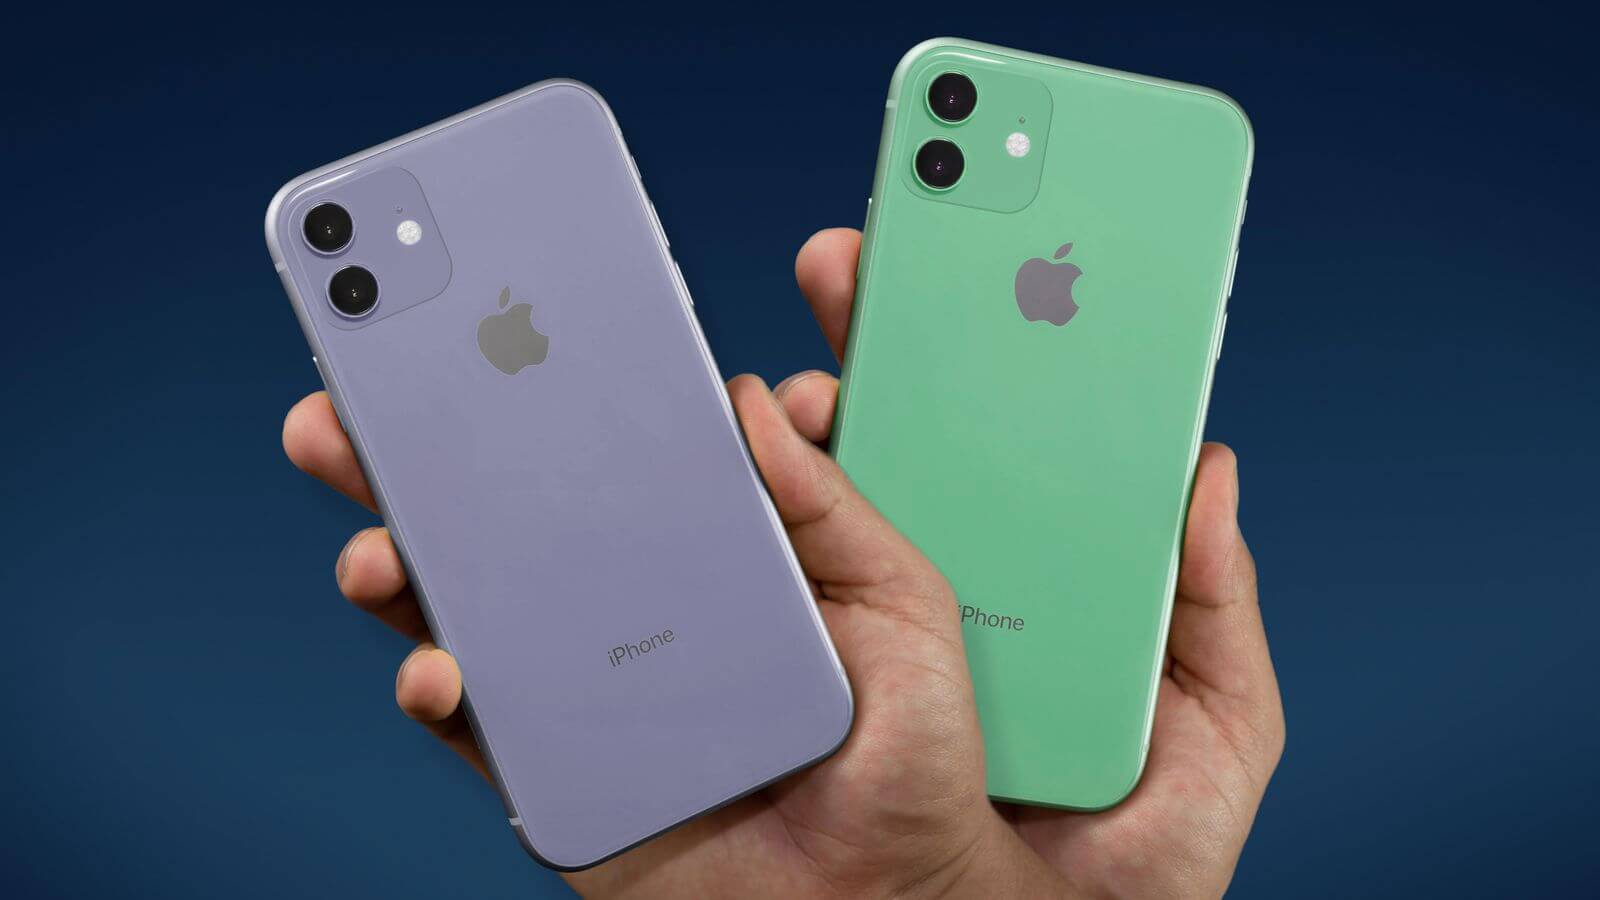 iPhone XR 2019 станет самым автономным смартфоном Apple